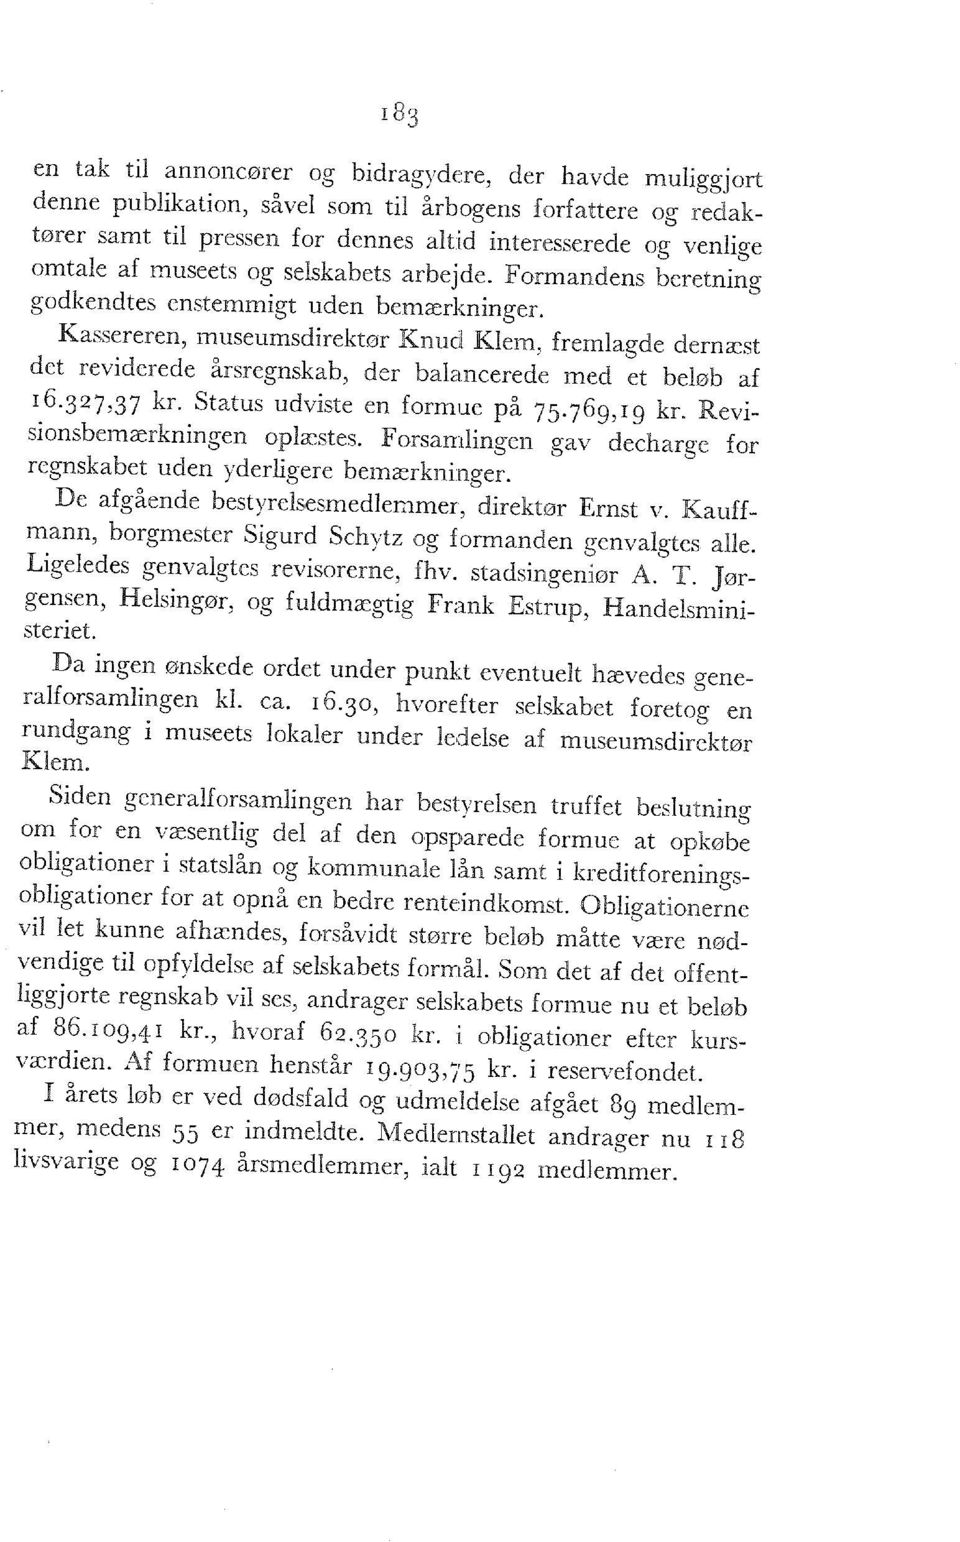 Kassereren, museumsdirektør Knud Klem, fremlagde dernæst det reviderede årsregnskab, der balancerede med et beløb af l6-3 2 7>37 kr - Status udviste en formue på 75.769,19 kr.